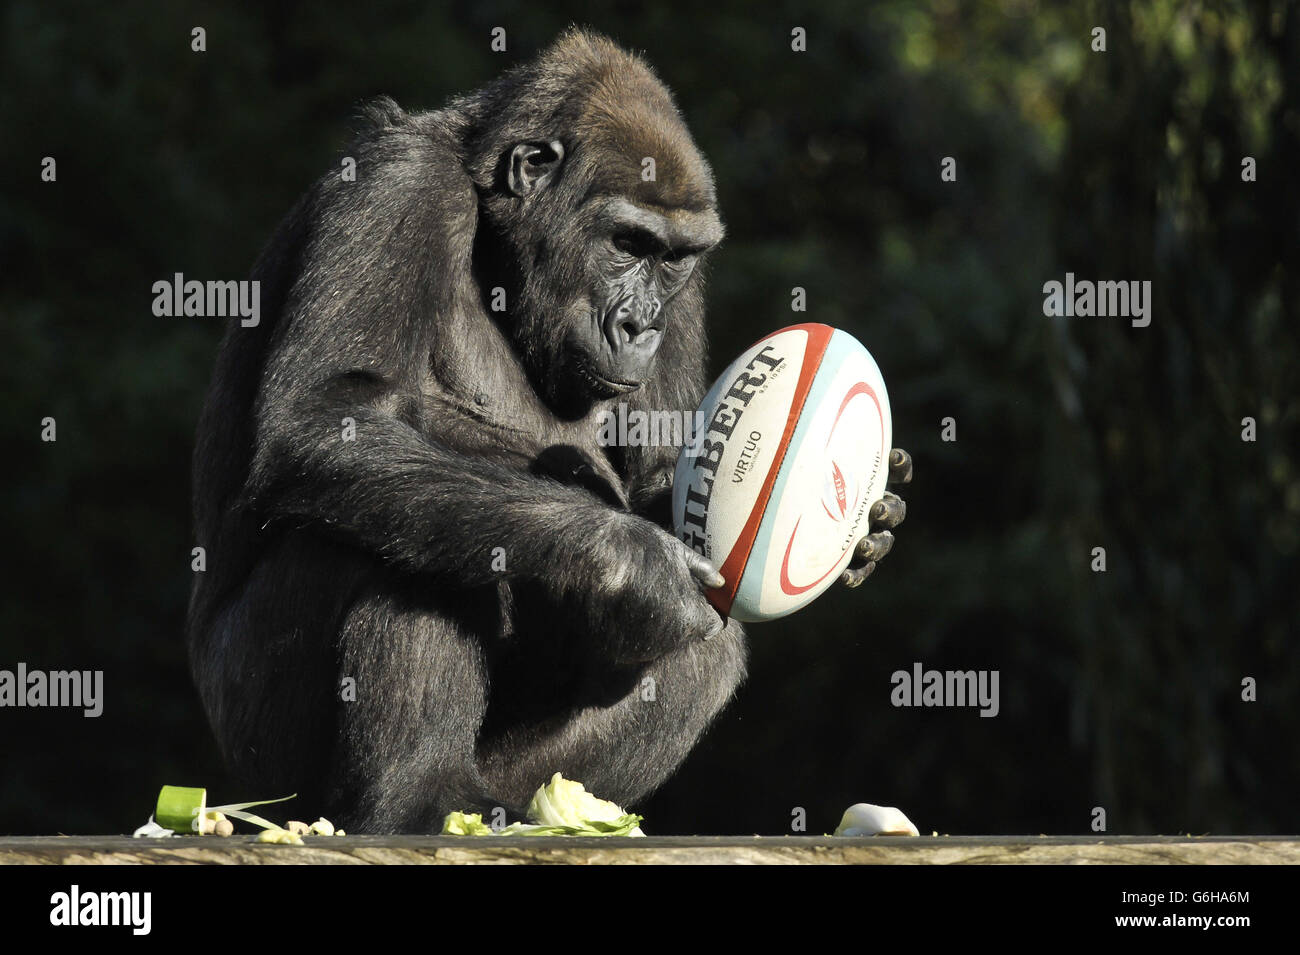 Komale il Western Lowland Gorilla ispeziona una palla di rugby che è stata inserita nel recinto dei gorilla allo Zoo di Bristol come parte del loro programma di arricchimento, dove viene dato loro qualcosa per stimolare e incoraggiare comportamenti giocosi. Foto Stock